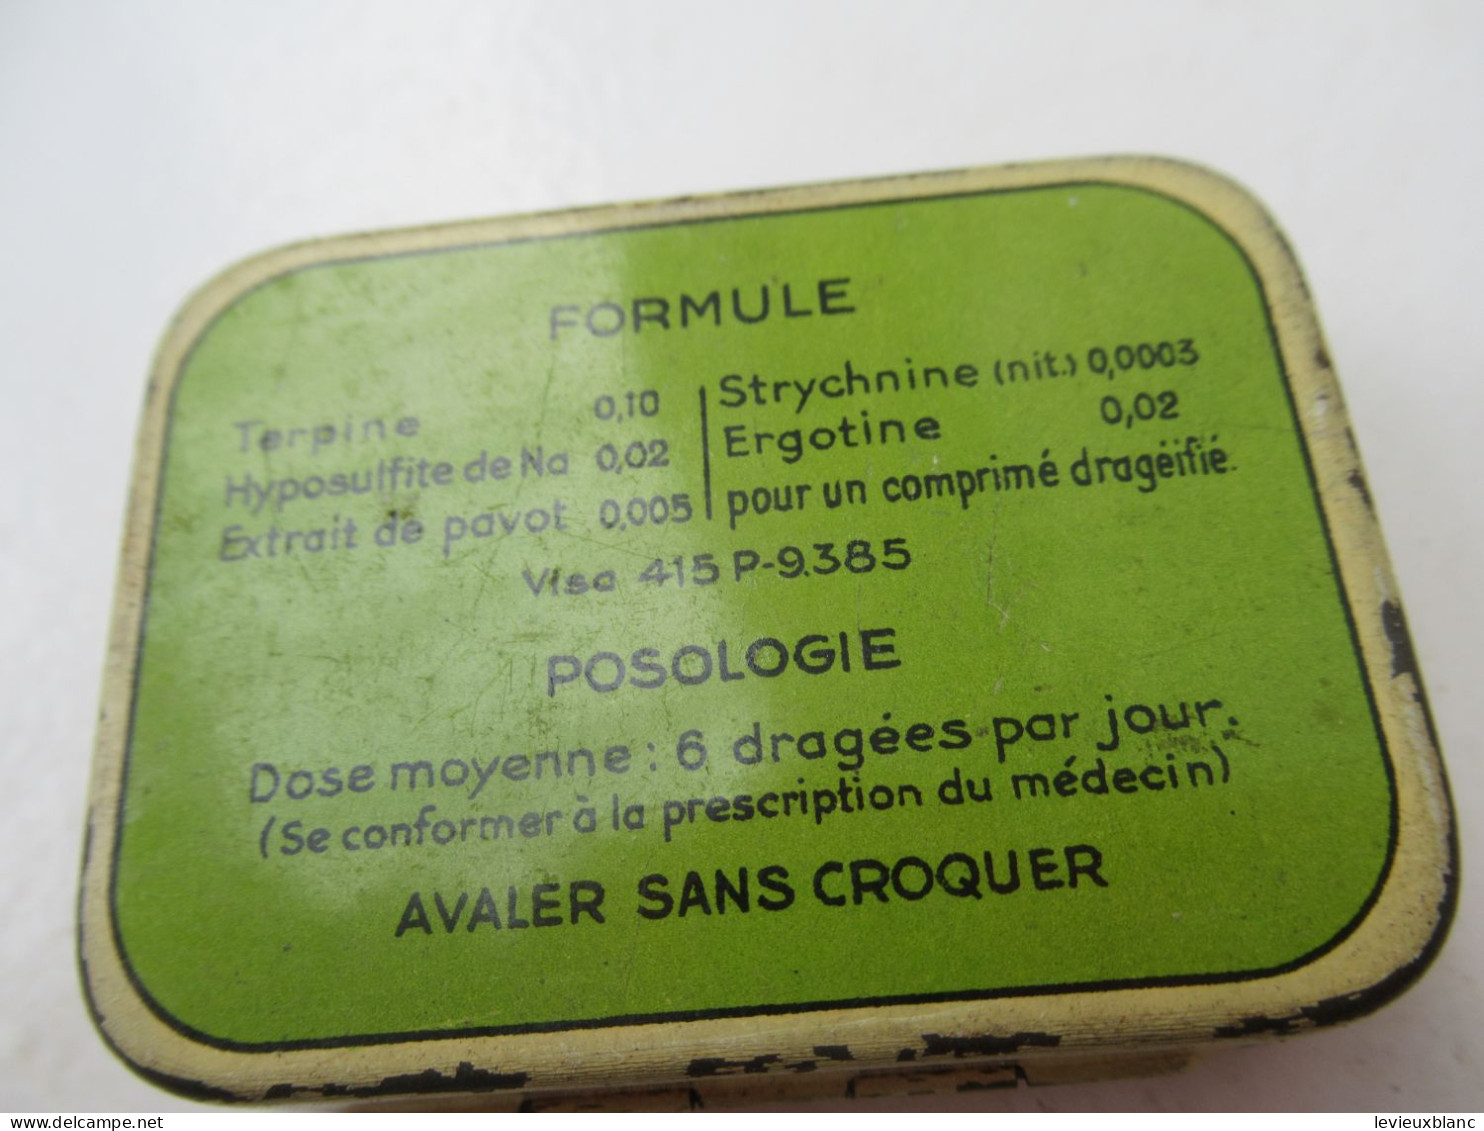 Boite Publicitaire Métallique/BRONCOTONINE /Toux Des Chroniques/ Laboratoires TORAUDE Paris /Vers 1960-1980  BFPP267 - Boxes